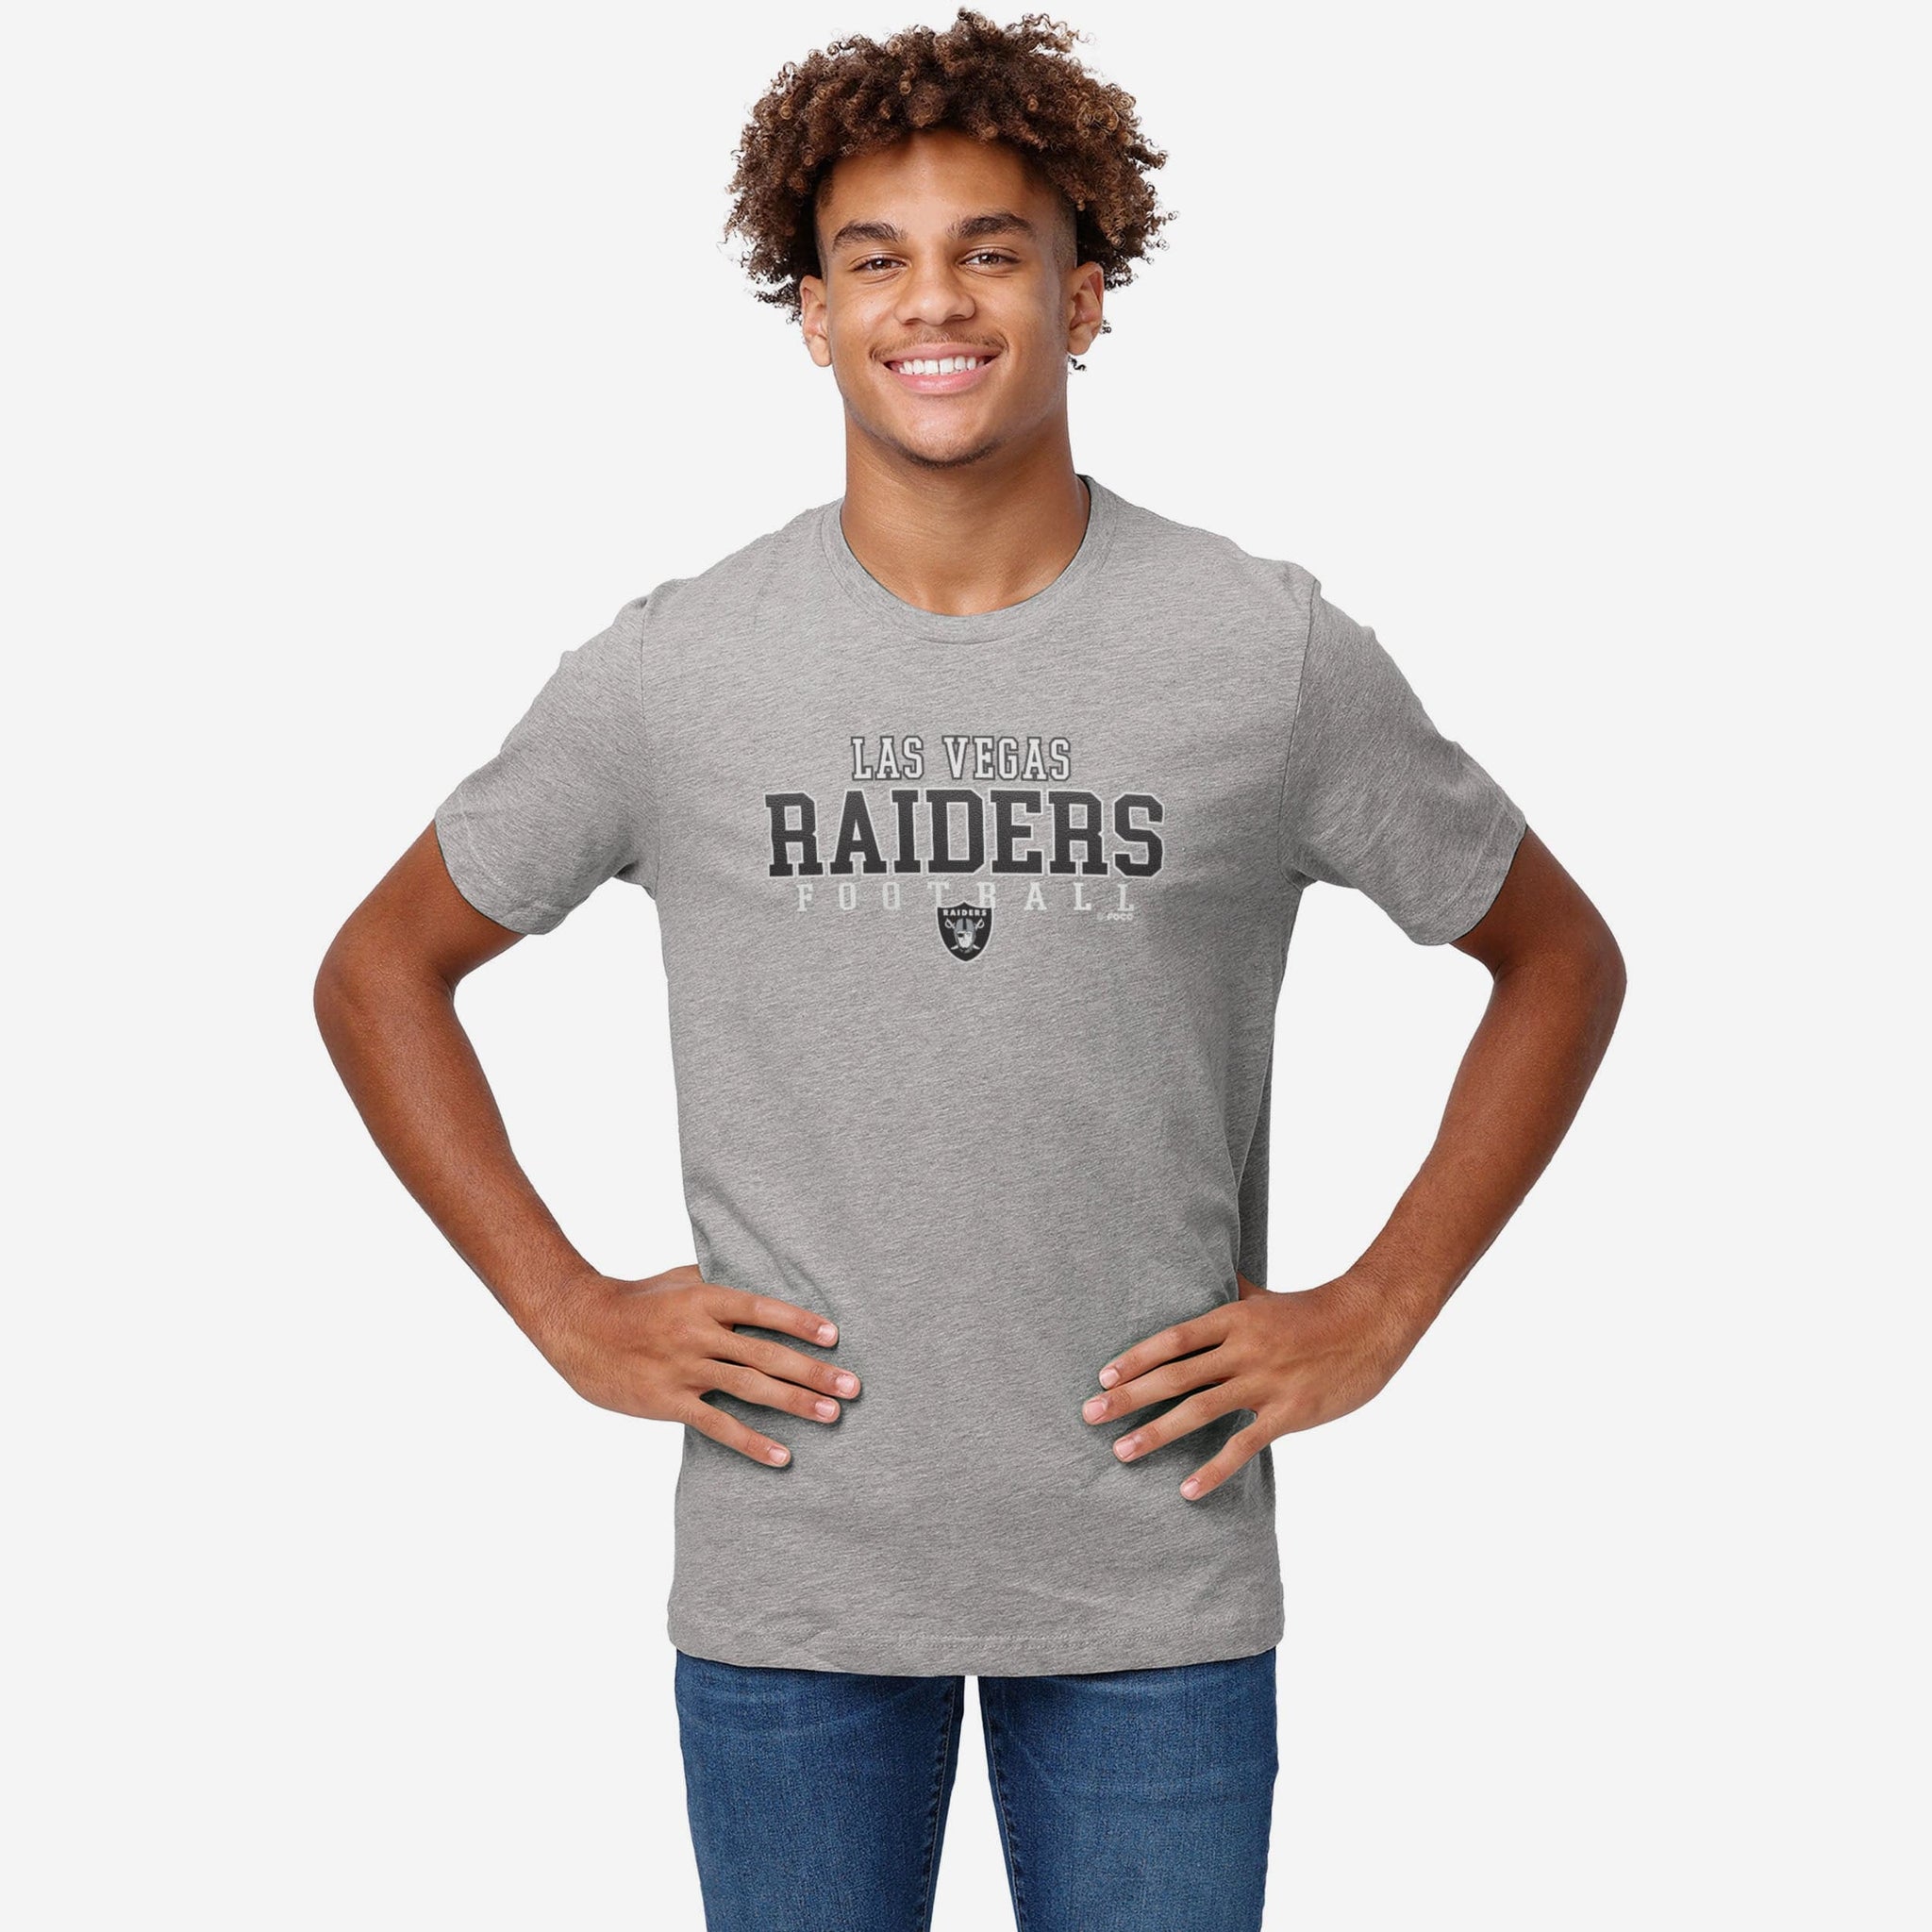 Las Vegas Raiders T-Shirt Vertical Graphic Men Cotton Oakland